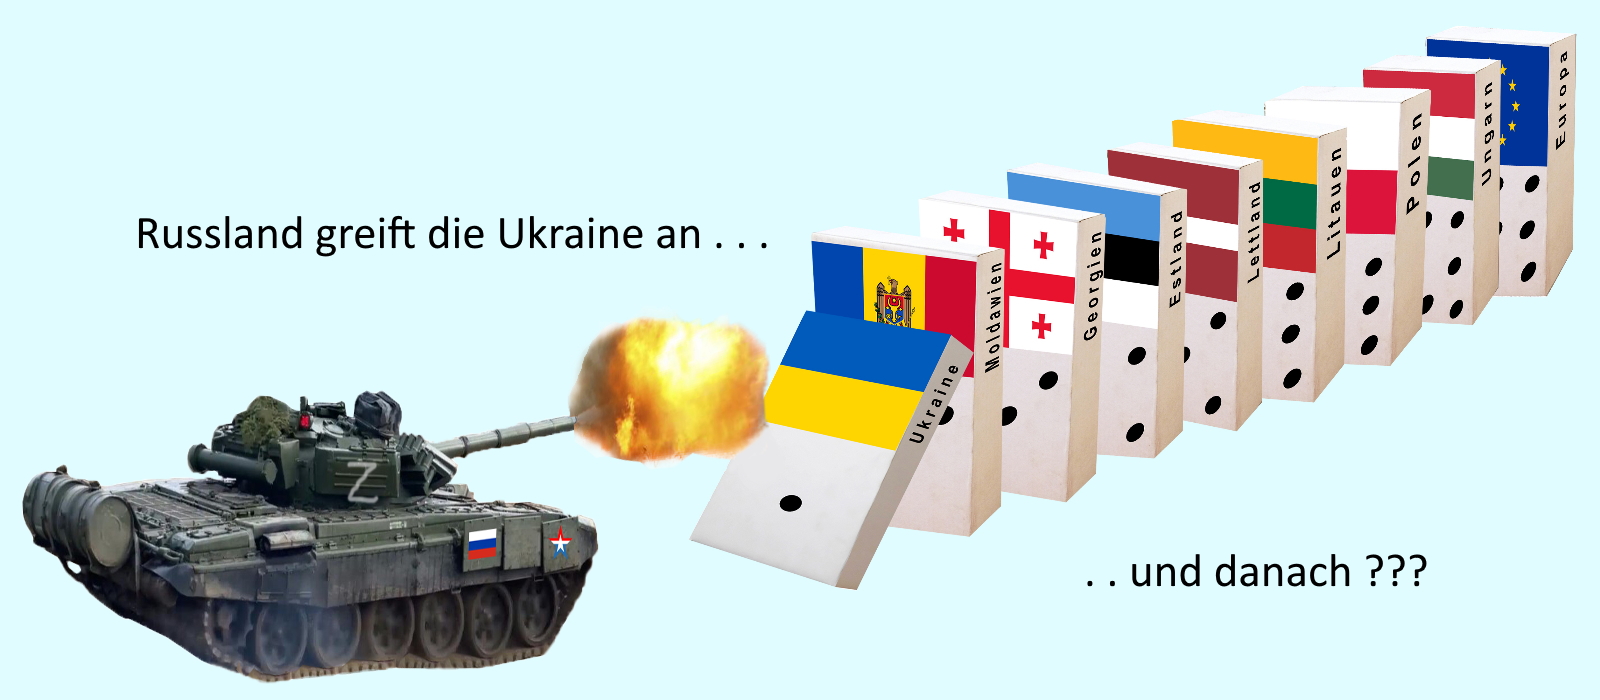 Russland greift die Ukraine mit Krieg an, und wen danch?